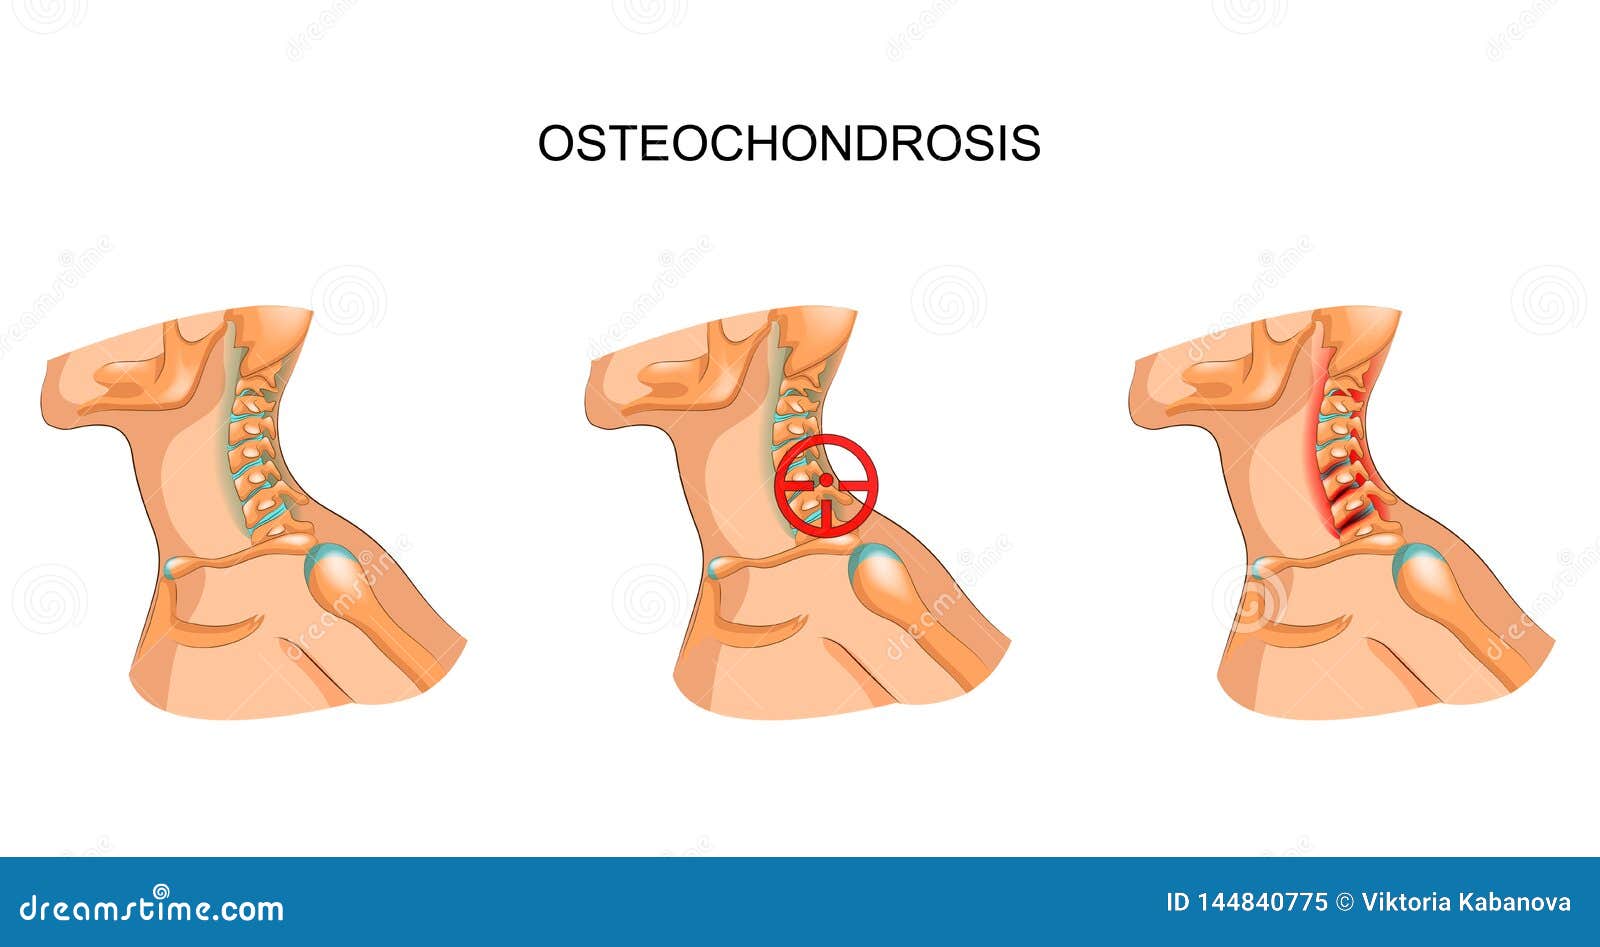 széles körben elterjedt osteochondrosis